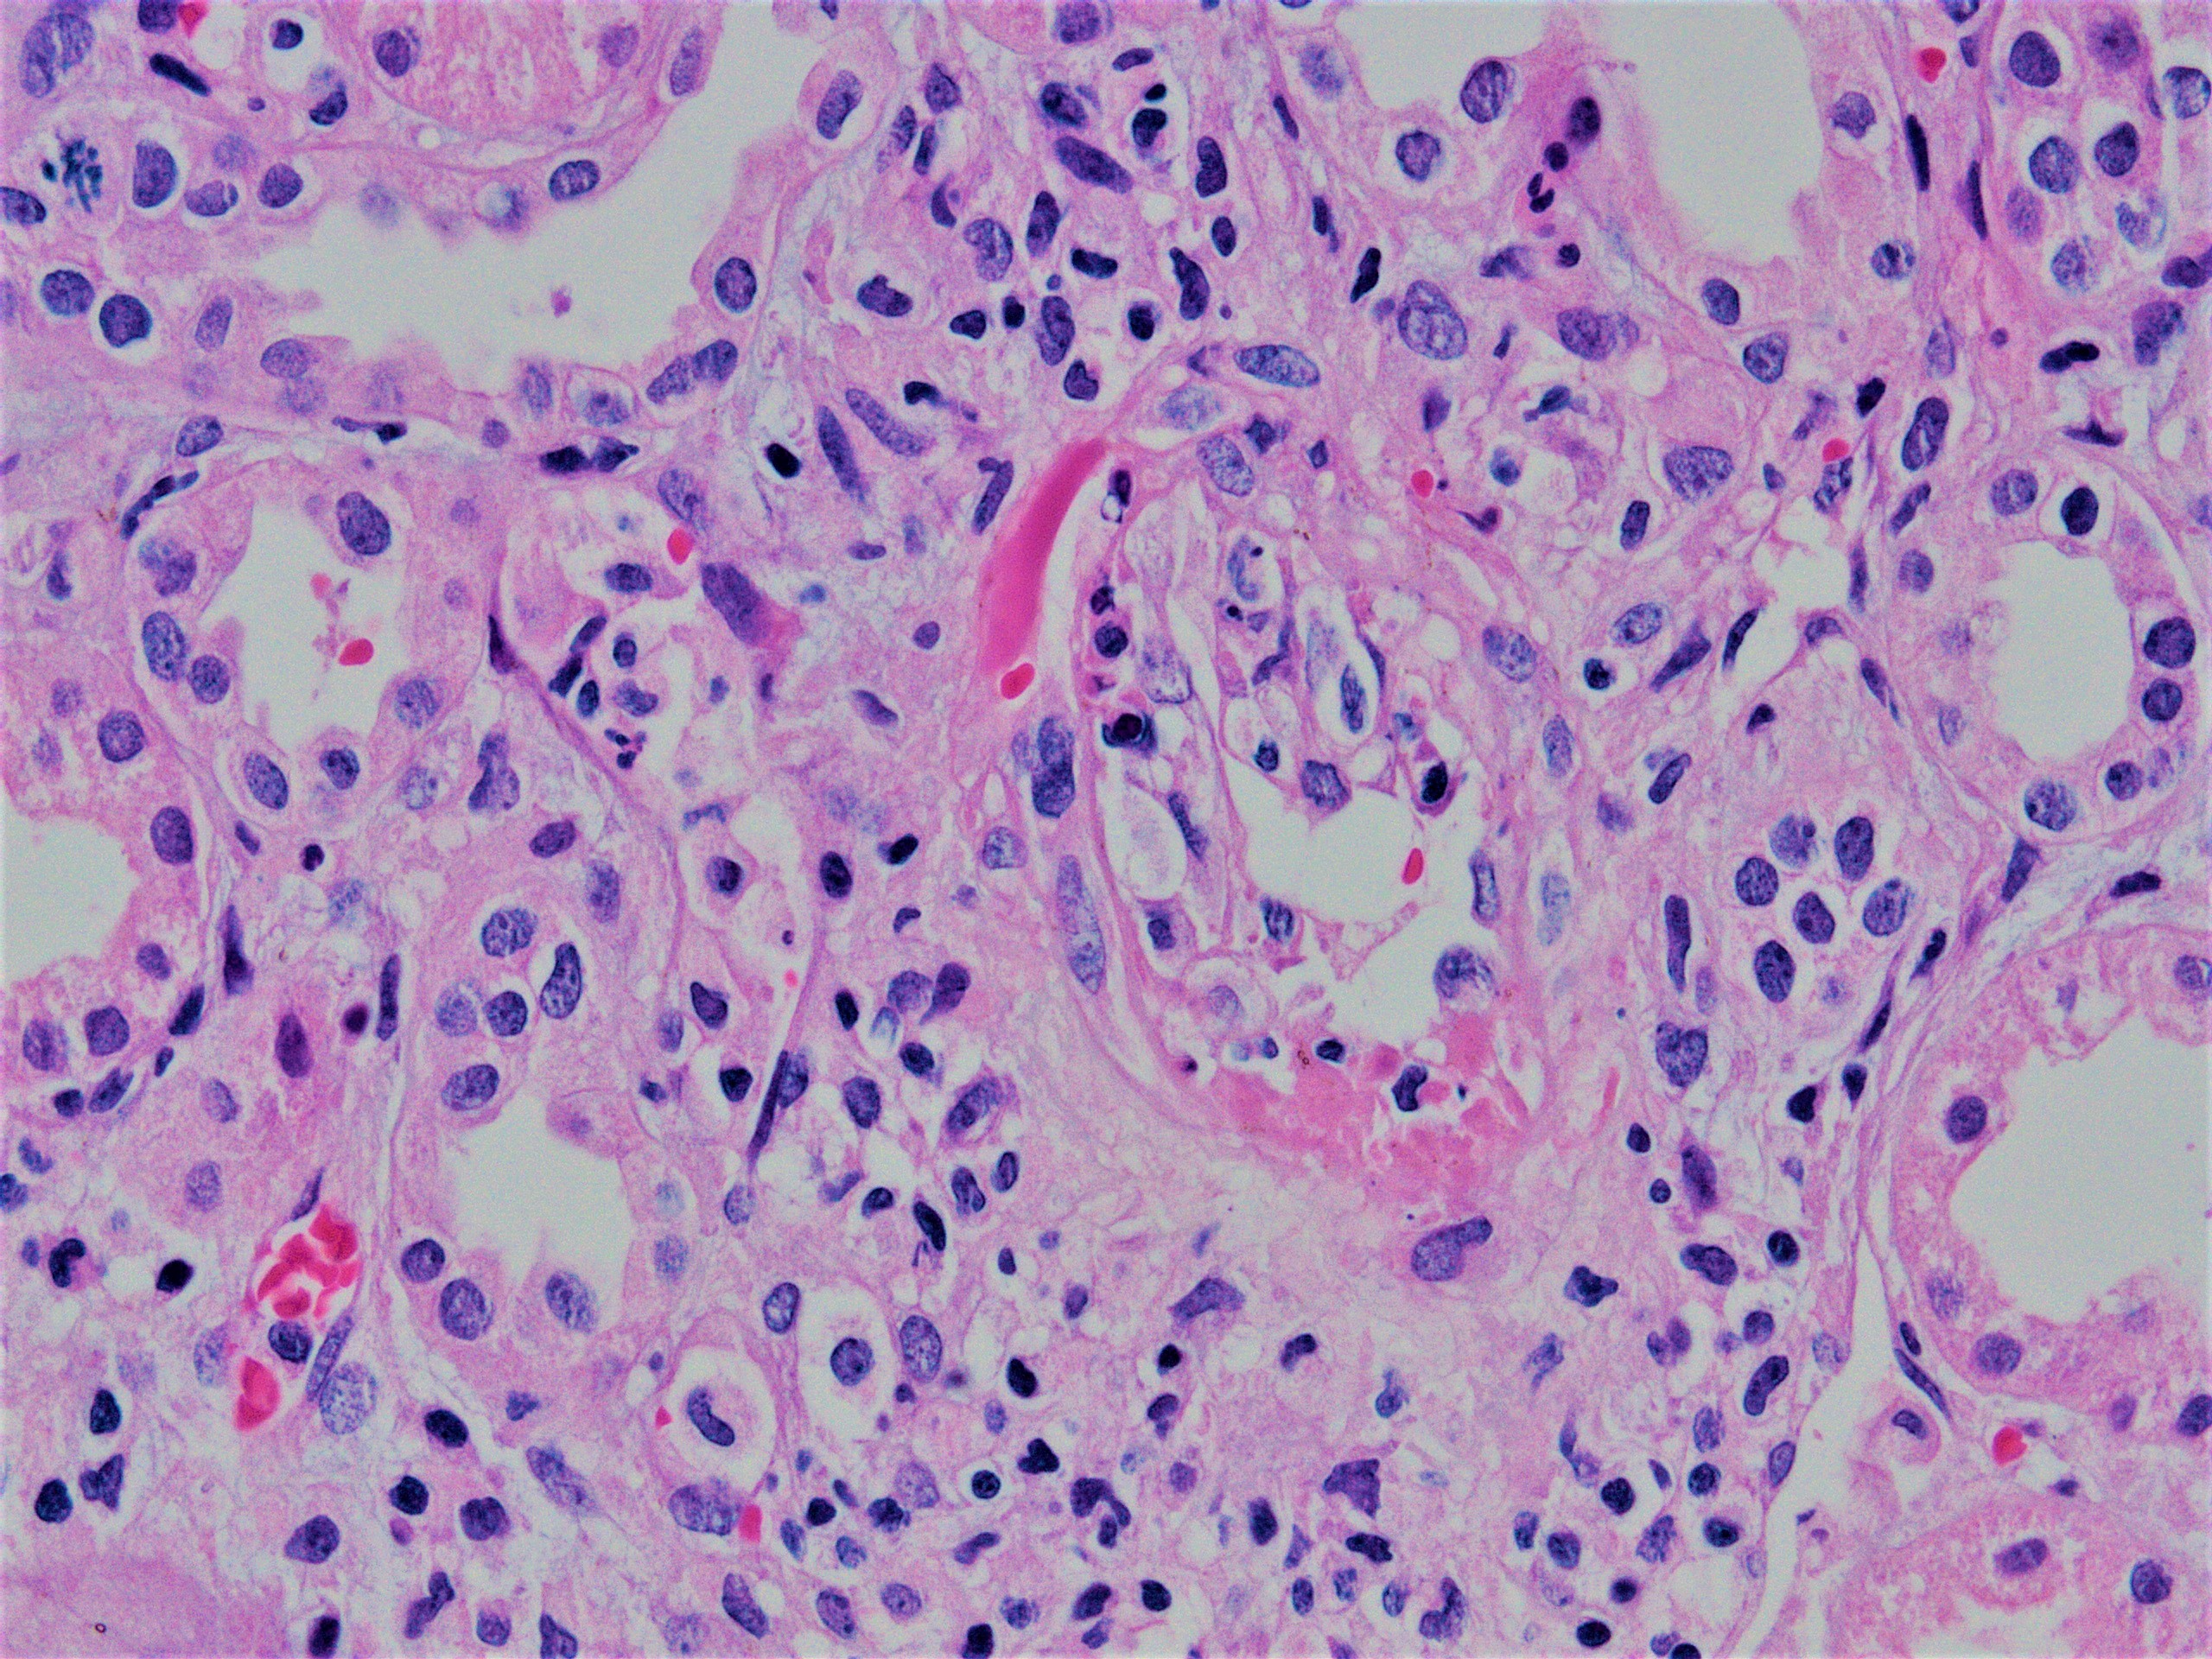 Transmural arteritis and fibrinoid necrosis